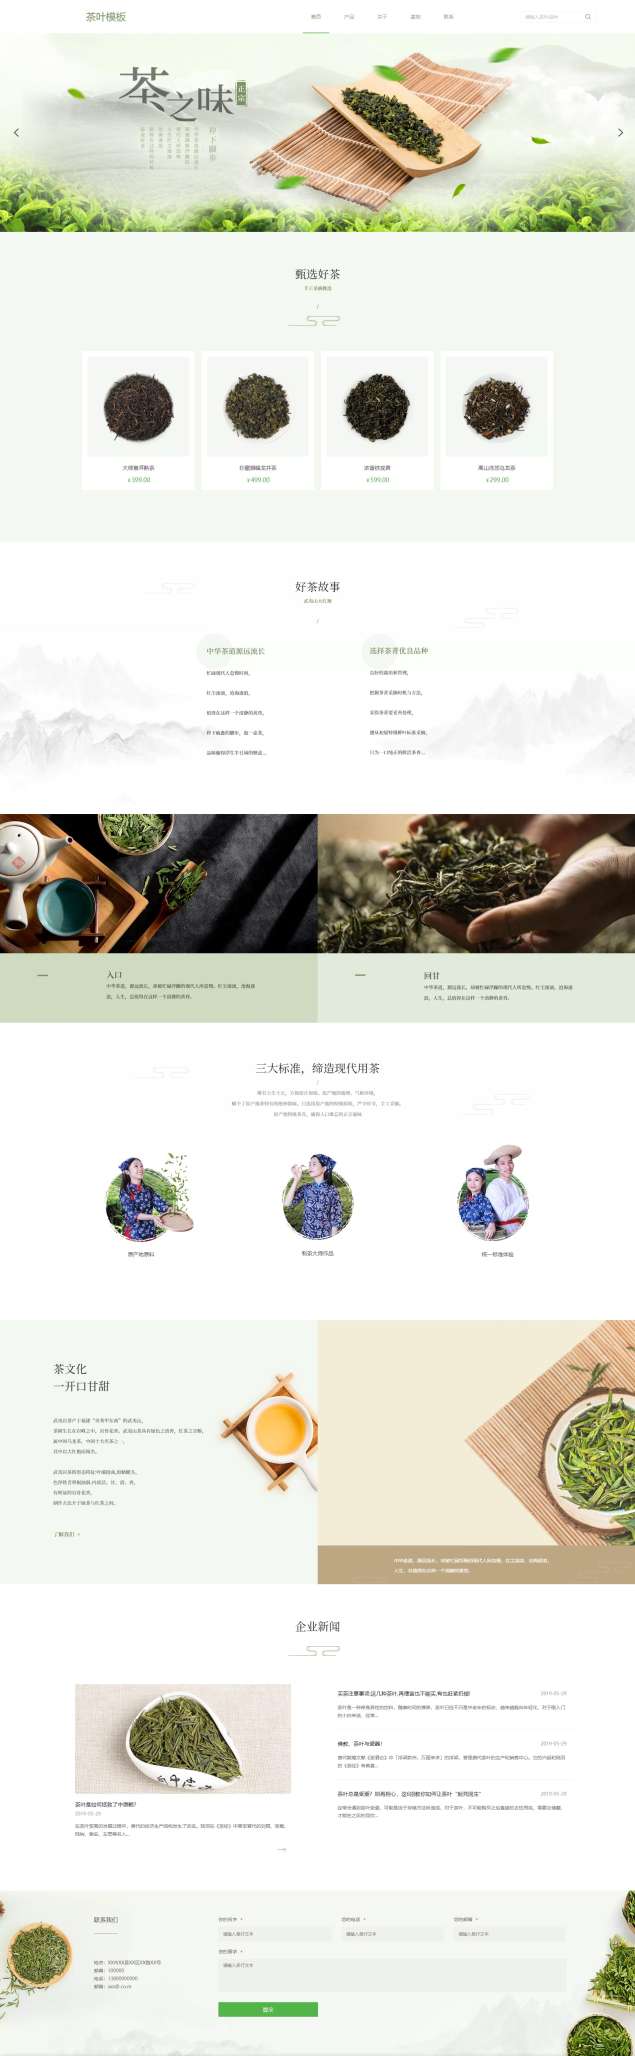 精品茶叶采茶基地网站模板